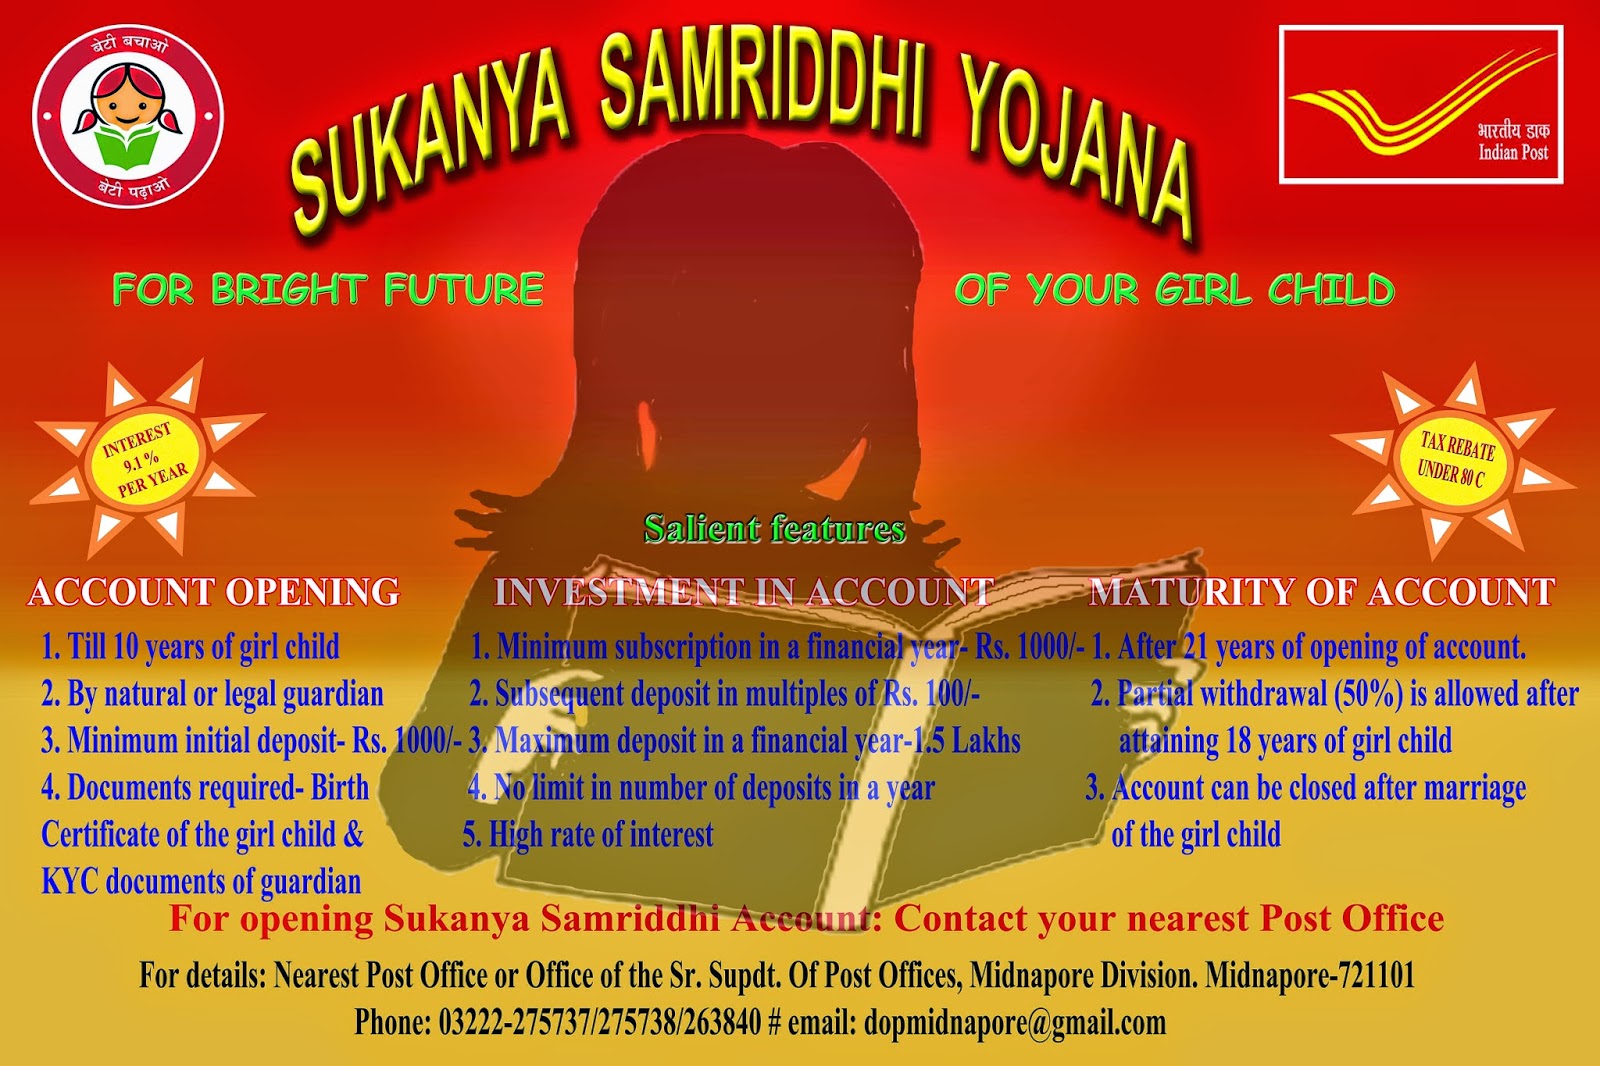 sukanya-samriddhi-yojana-banners-and-training-materials-ppt-sa-post